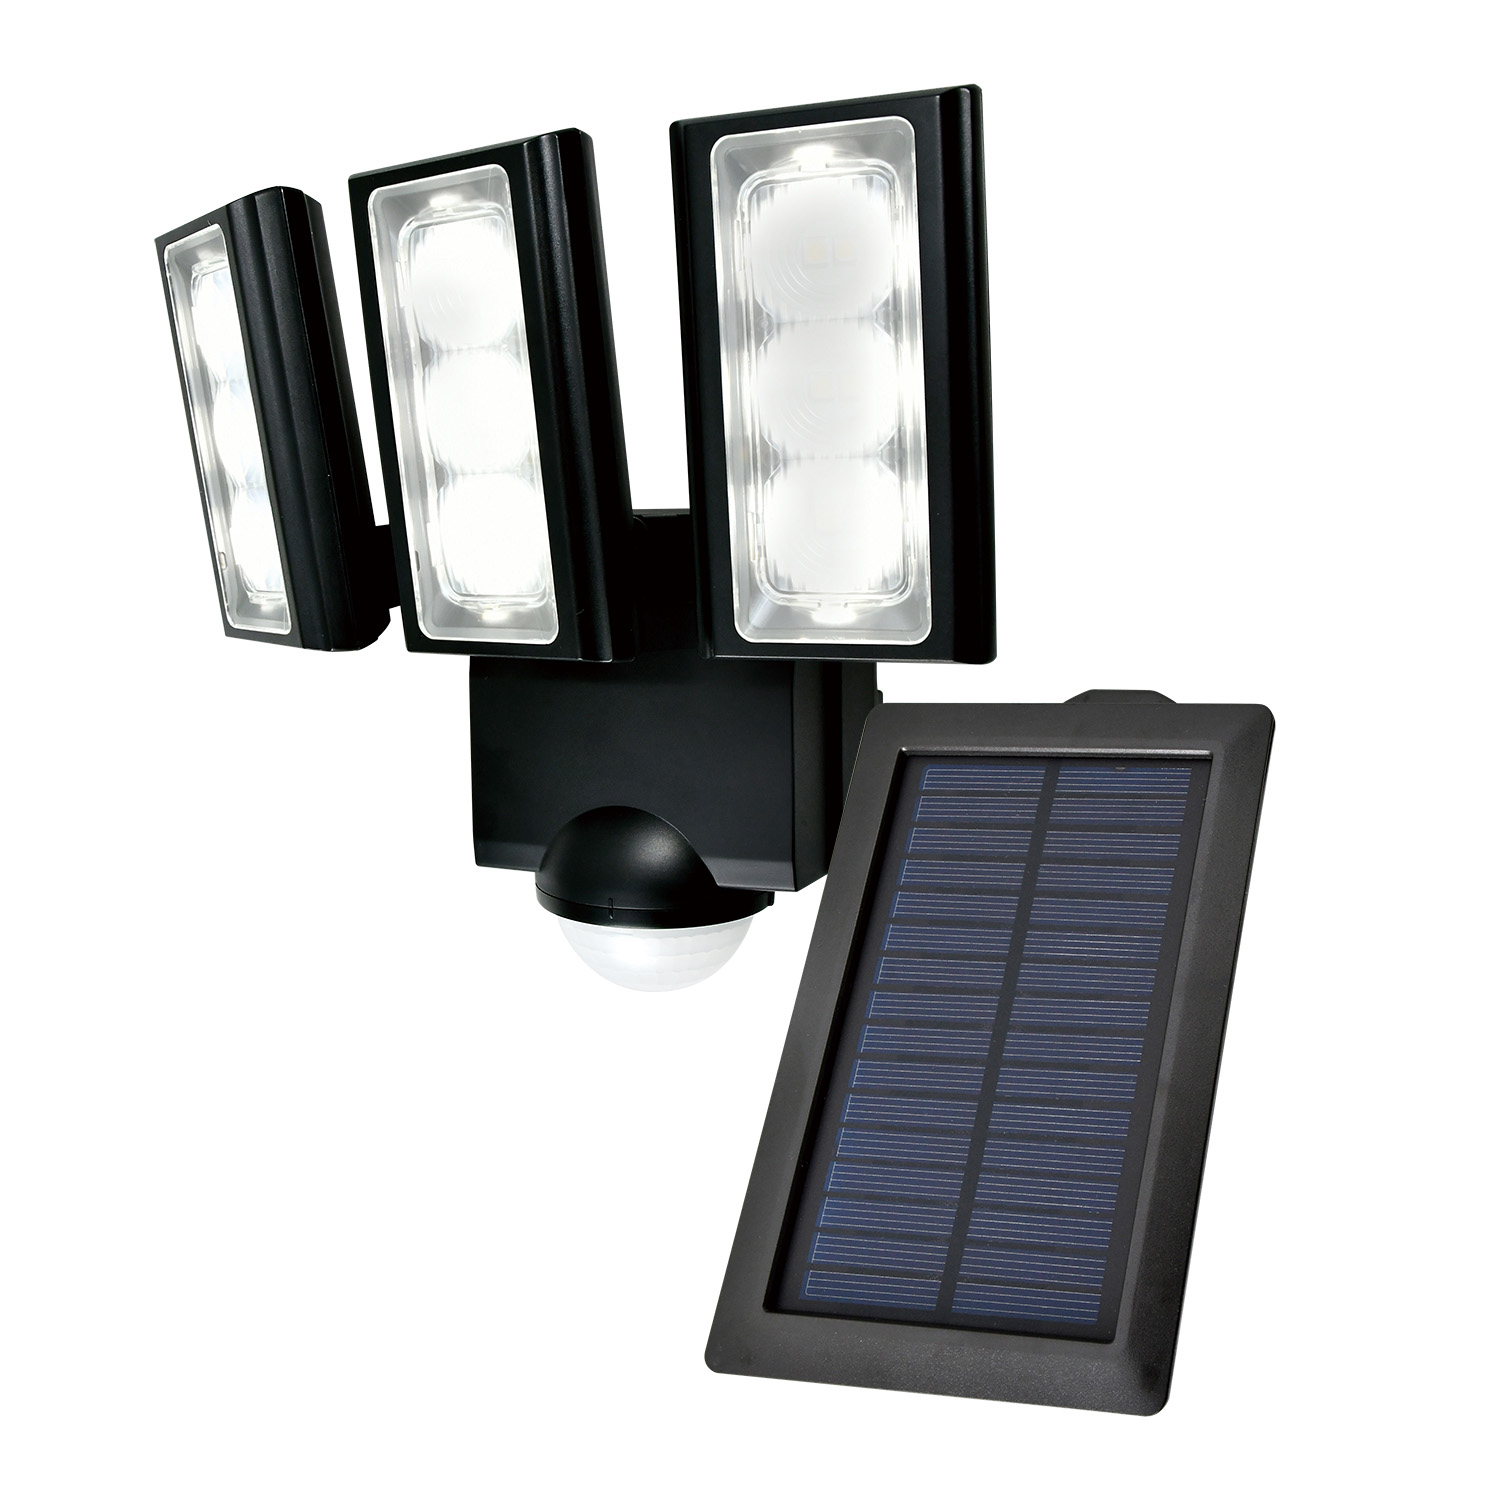 LEDセンサーライト ソーラー発電式 3灯タイプ